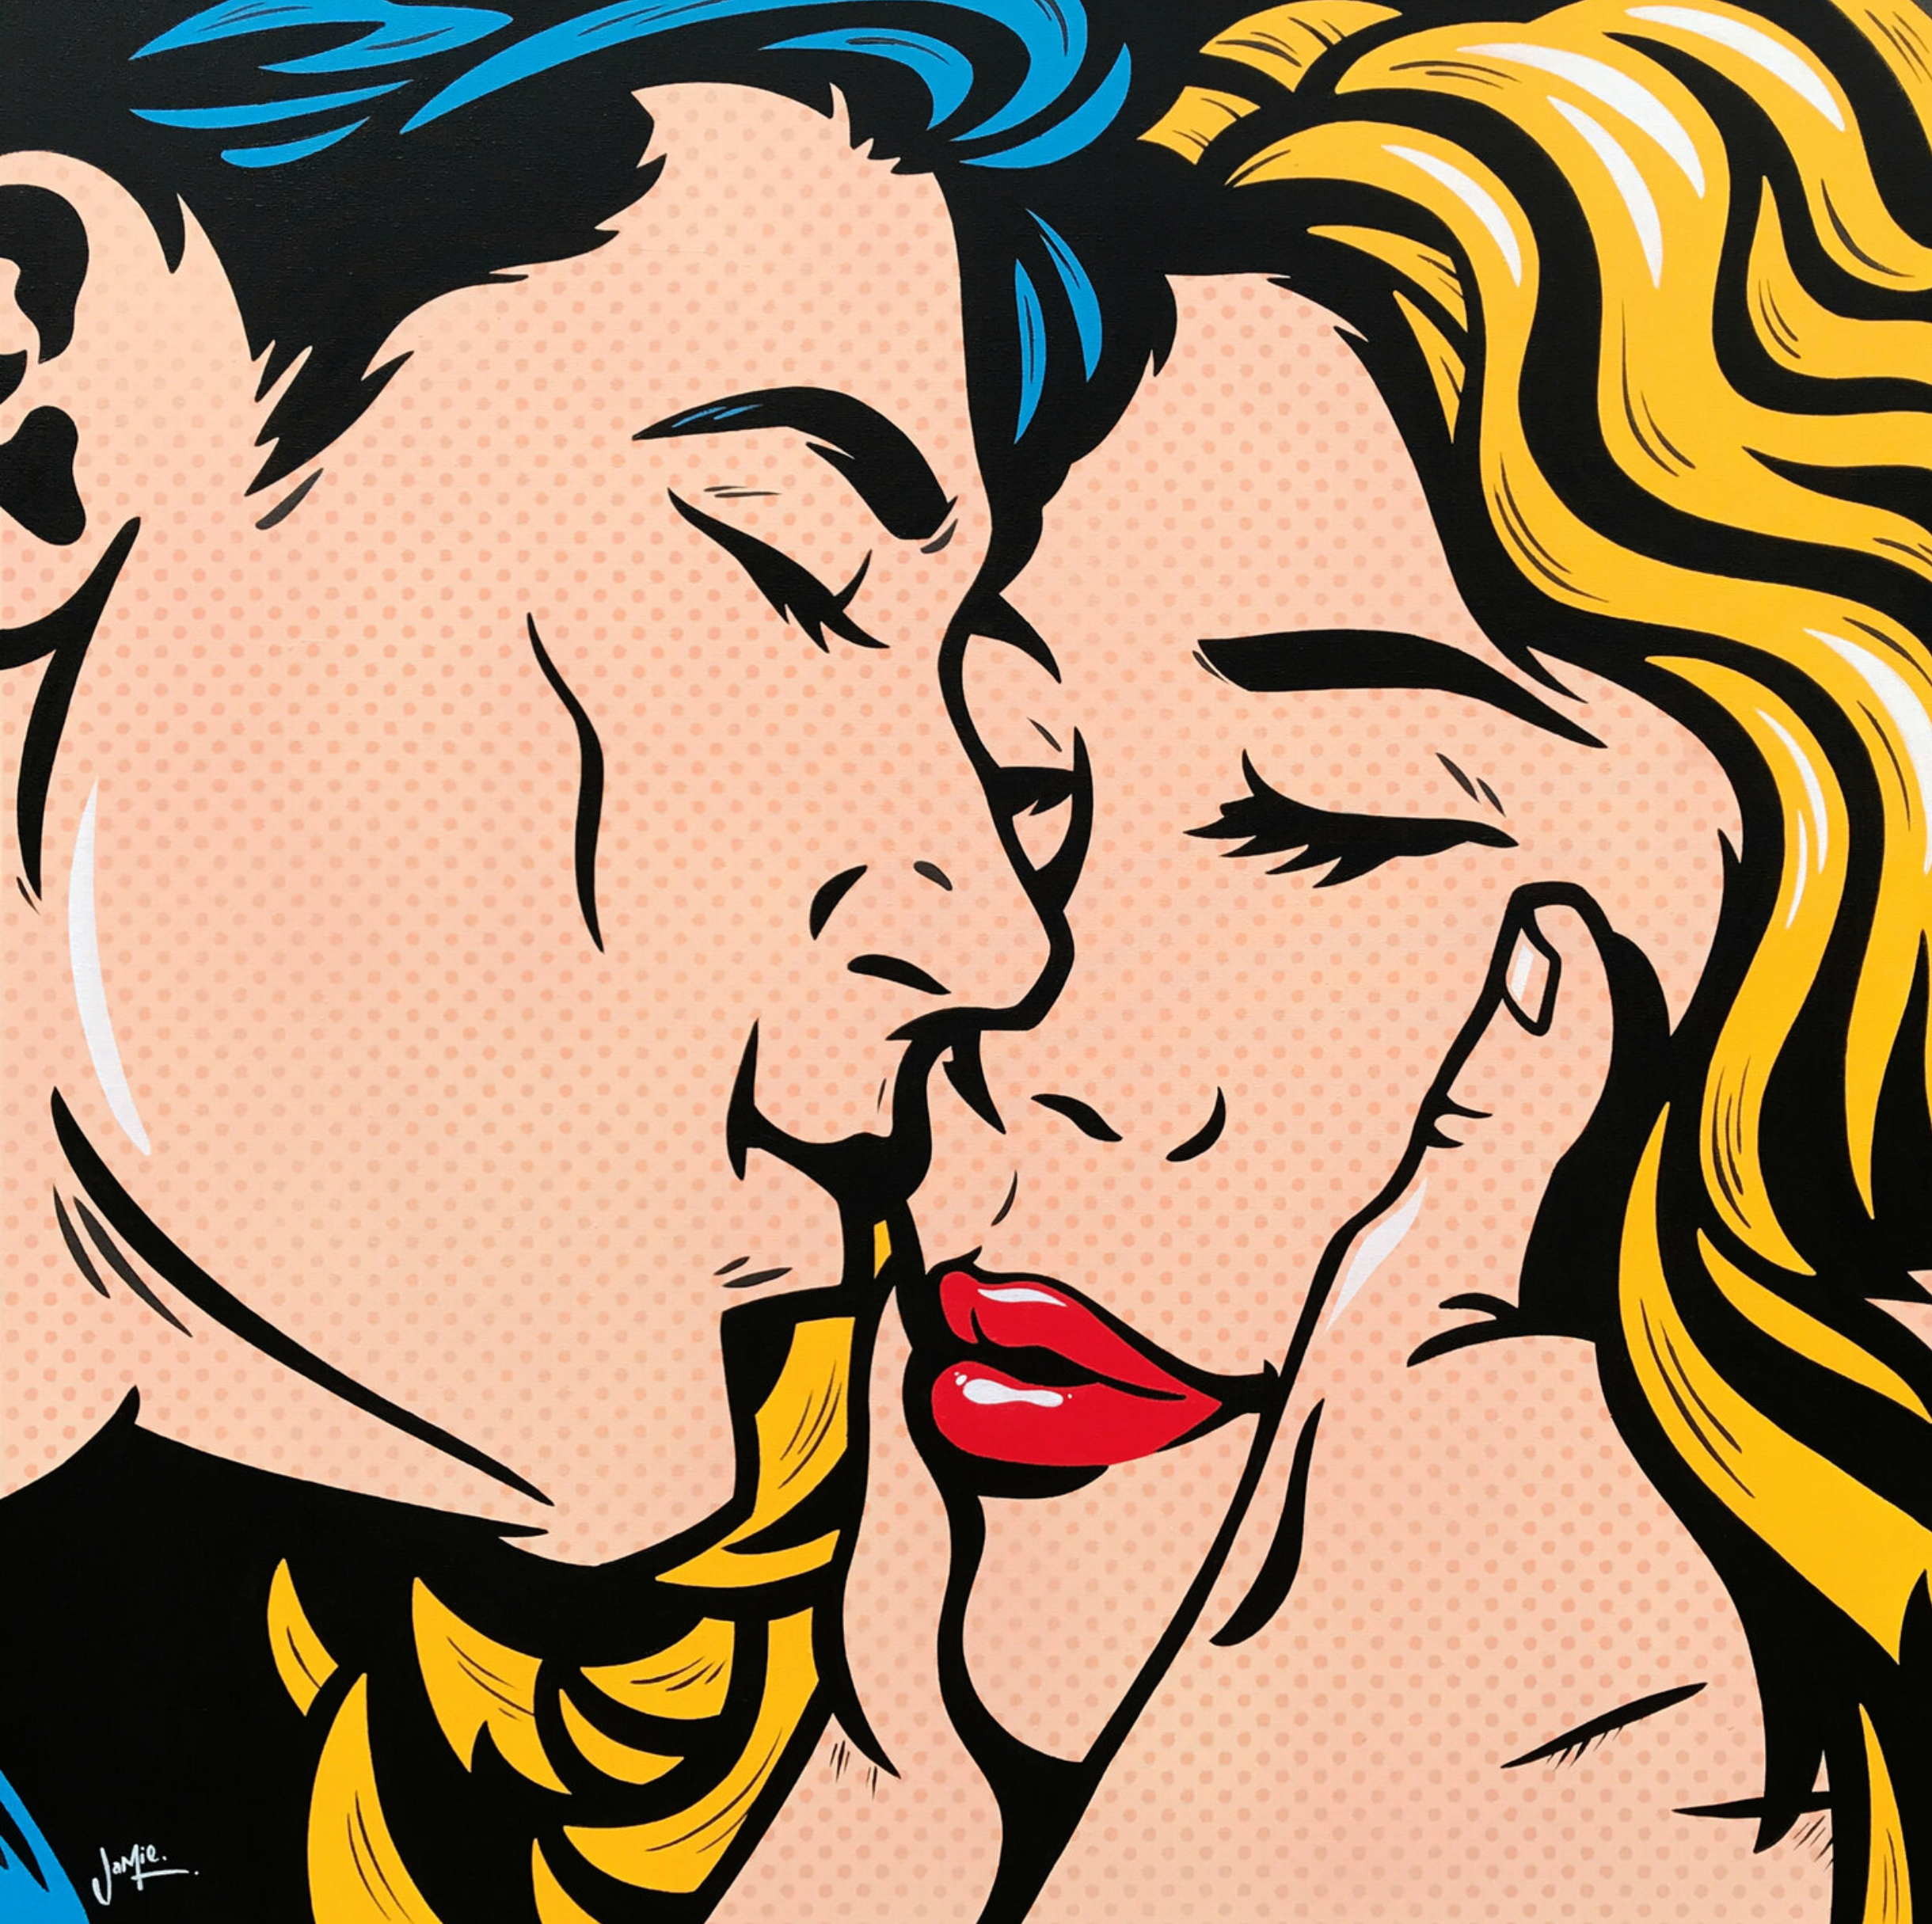 Pintura pop art "Anticipation" de Jamie Lee en estilo cómic con diseño original, una joven pareja de enamorados anticipa su primer beso mientras él sostiene suavemente el rostro de ella. Pintura pop art en estilo cómic con diseño original.